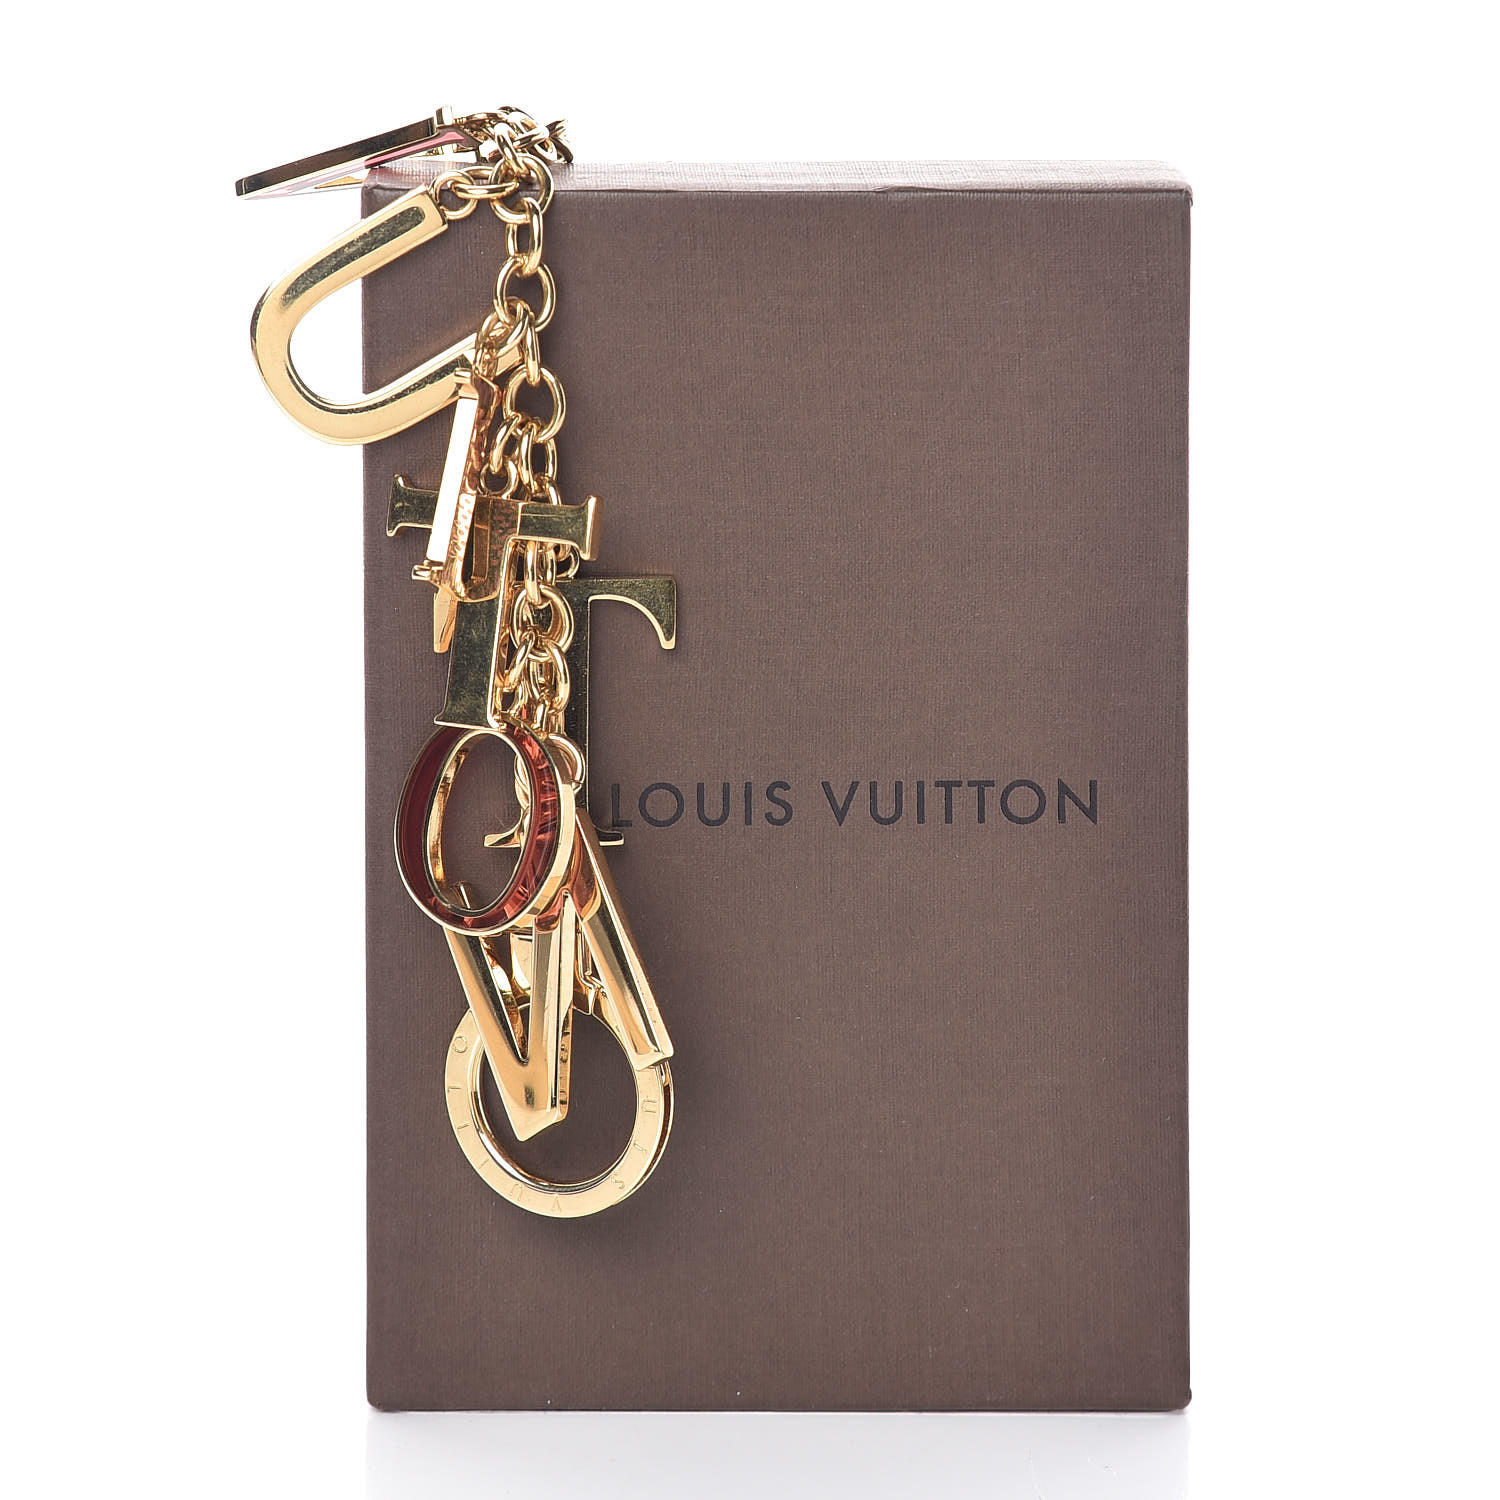 LOUIS VUITTON LV Tag Bag Charm Gold 439604